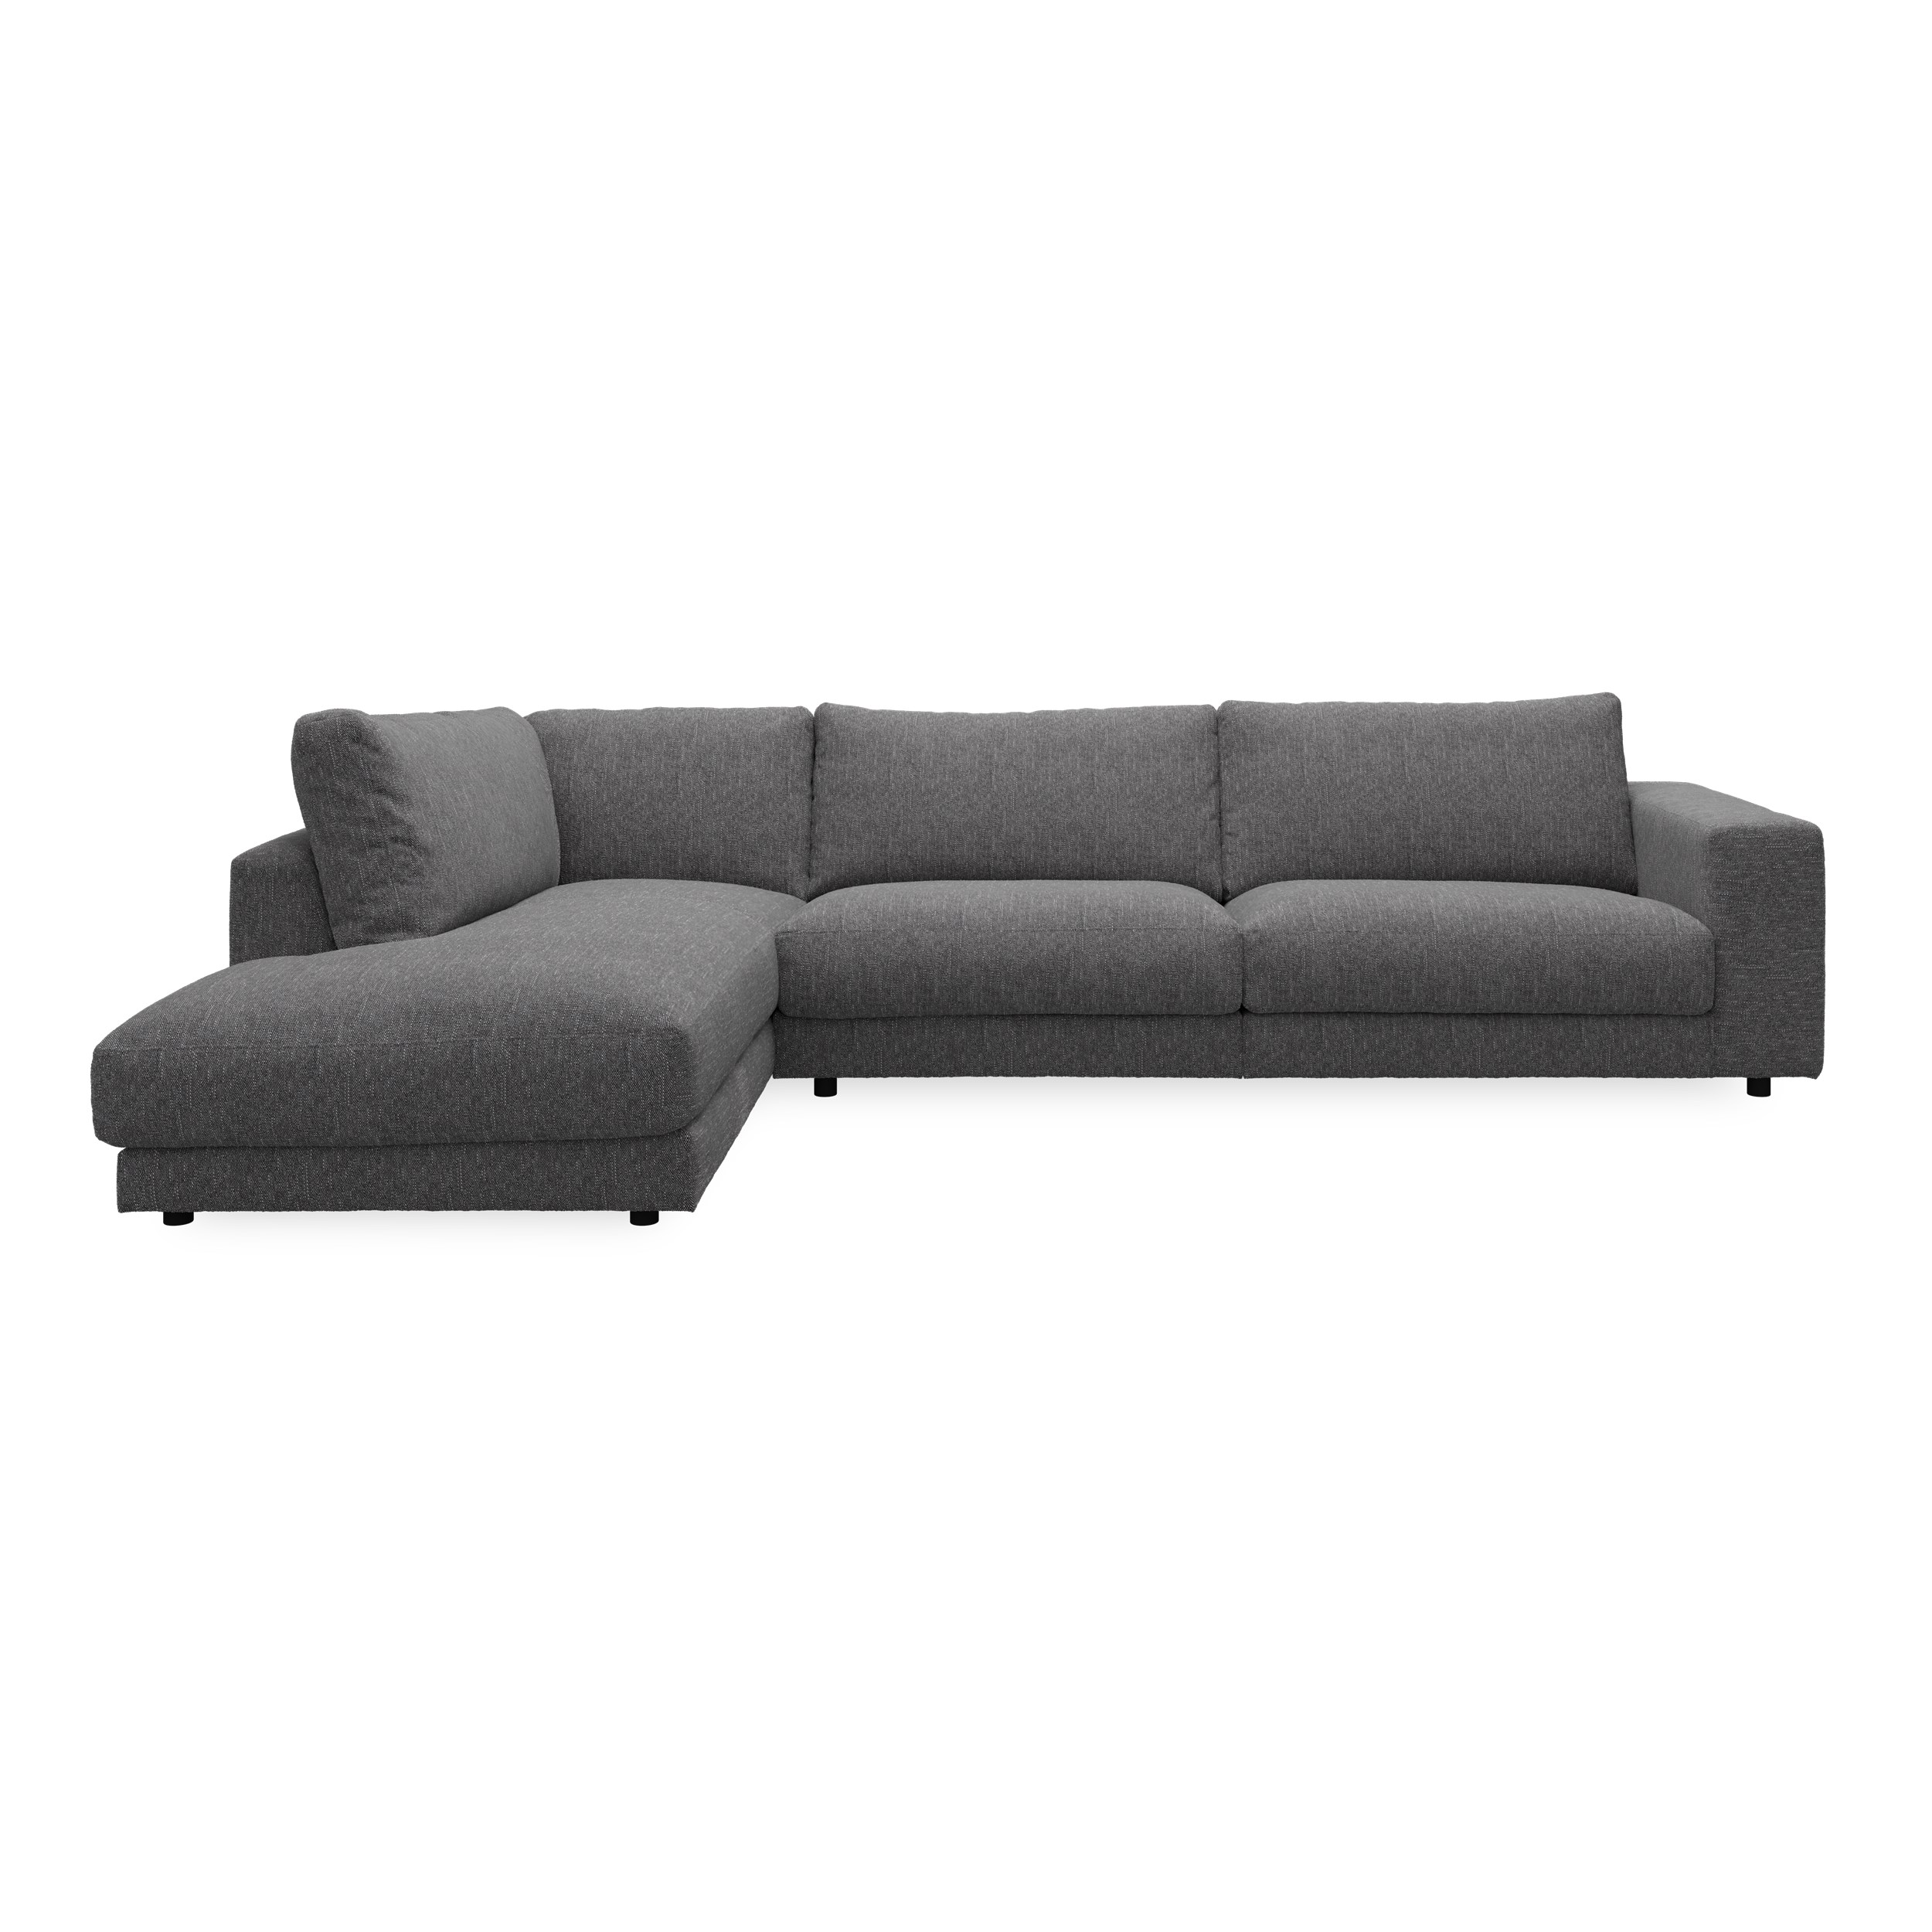 Bennent vänstervänd soffa med divan - Yelda Grey klädsel, ben i svart plast och S:skum/fib/din/sili R:Dun/skum